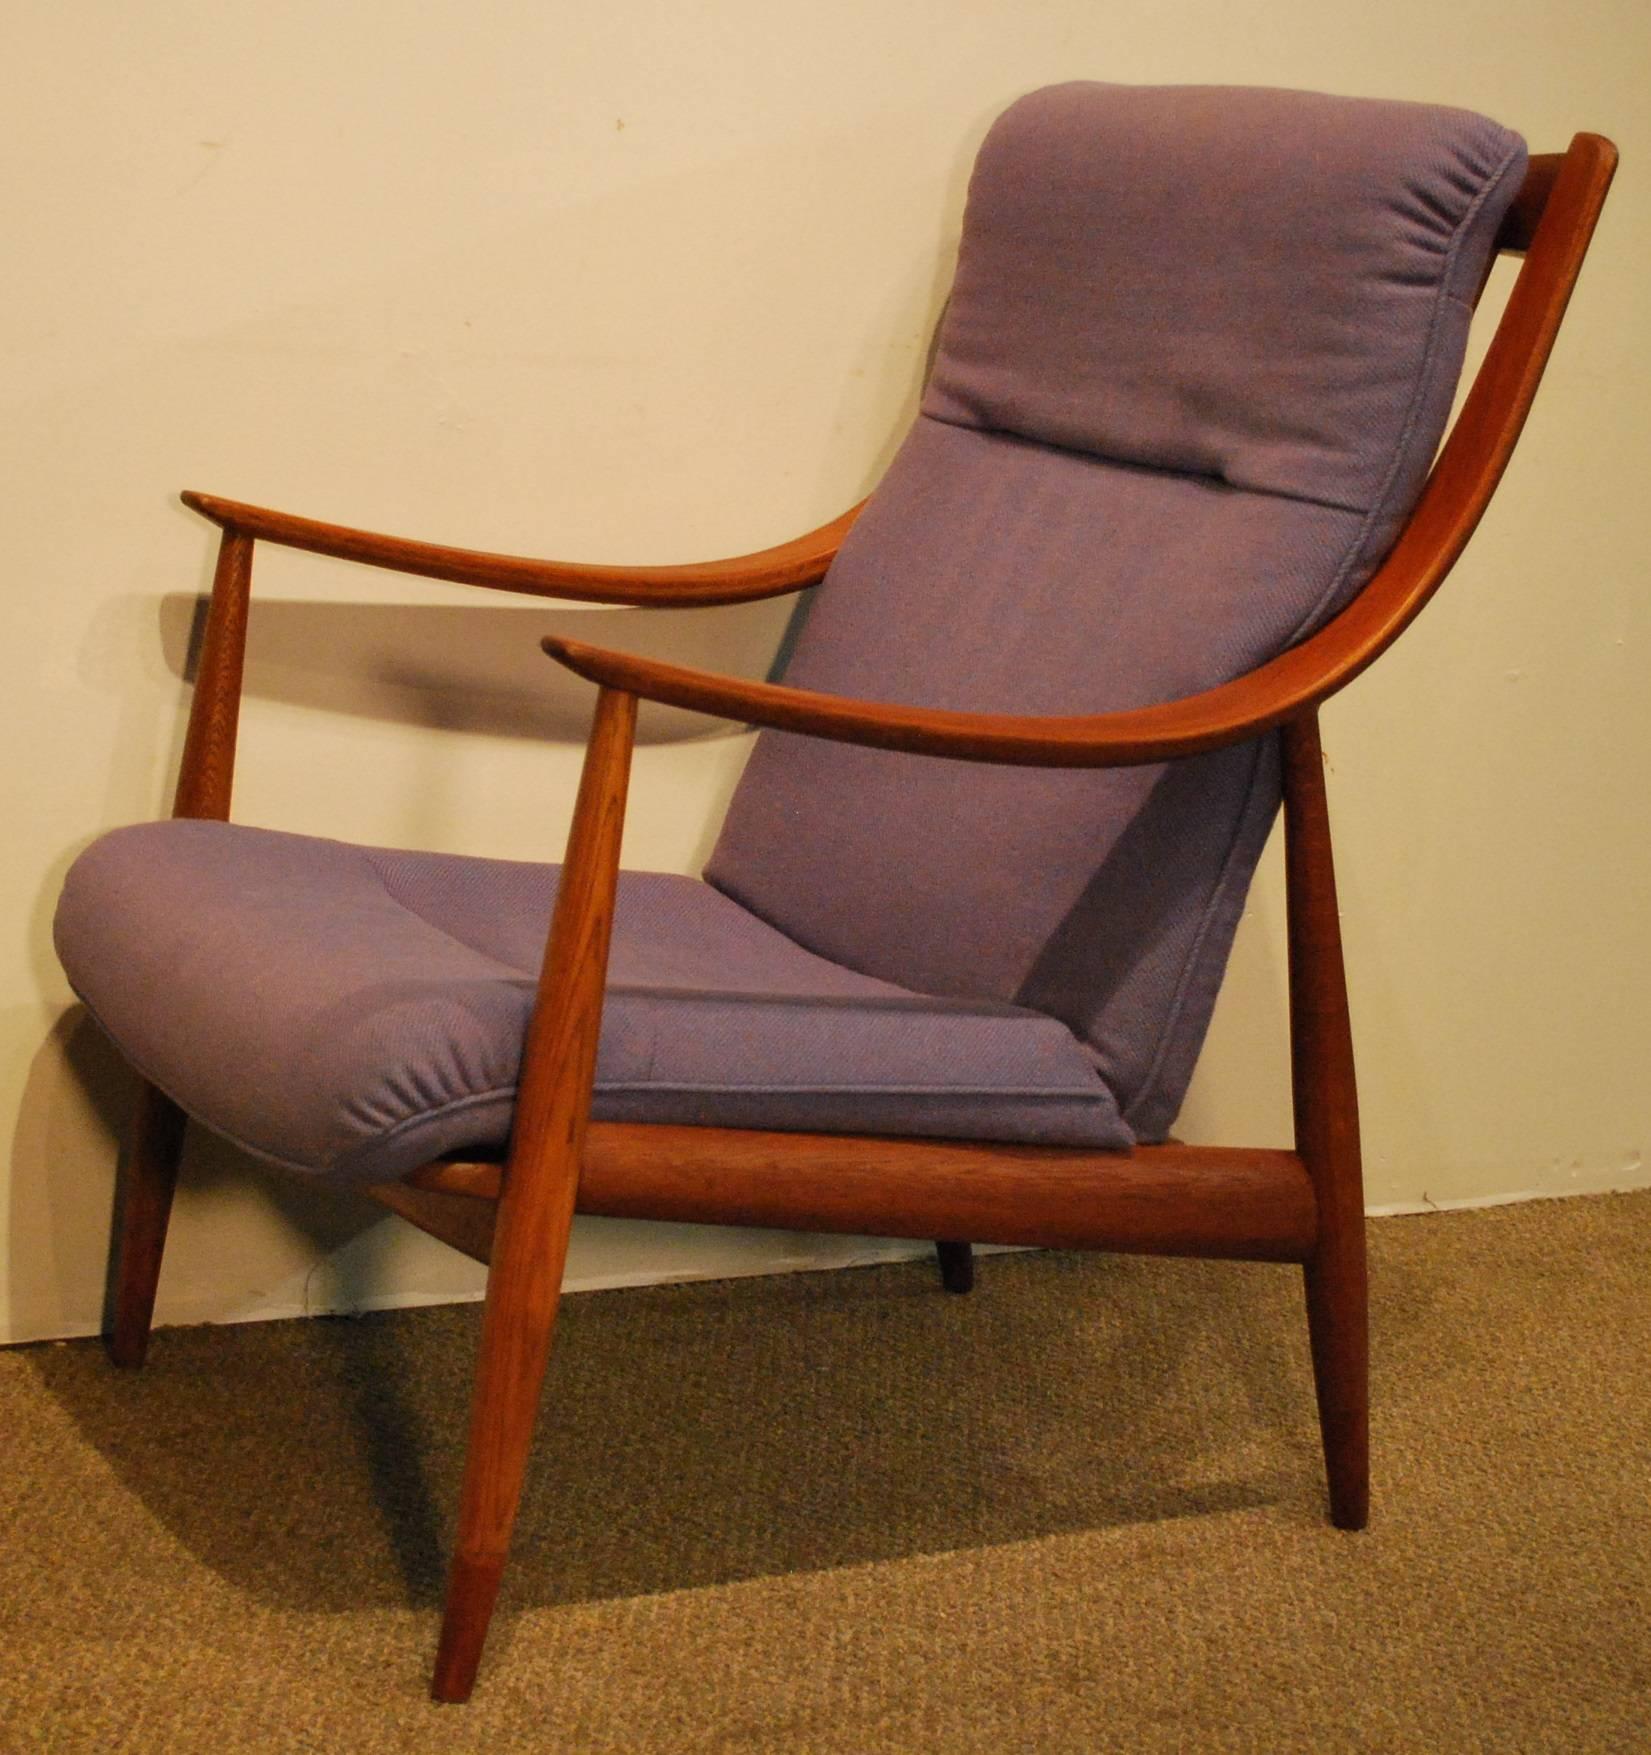 Peter Hvidt/Orla Molgaard-Nielsen Designed Danish Modern Teak Easy Chair #148  For Sale 1